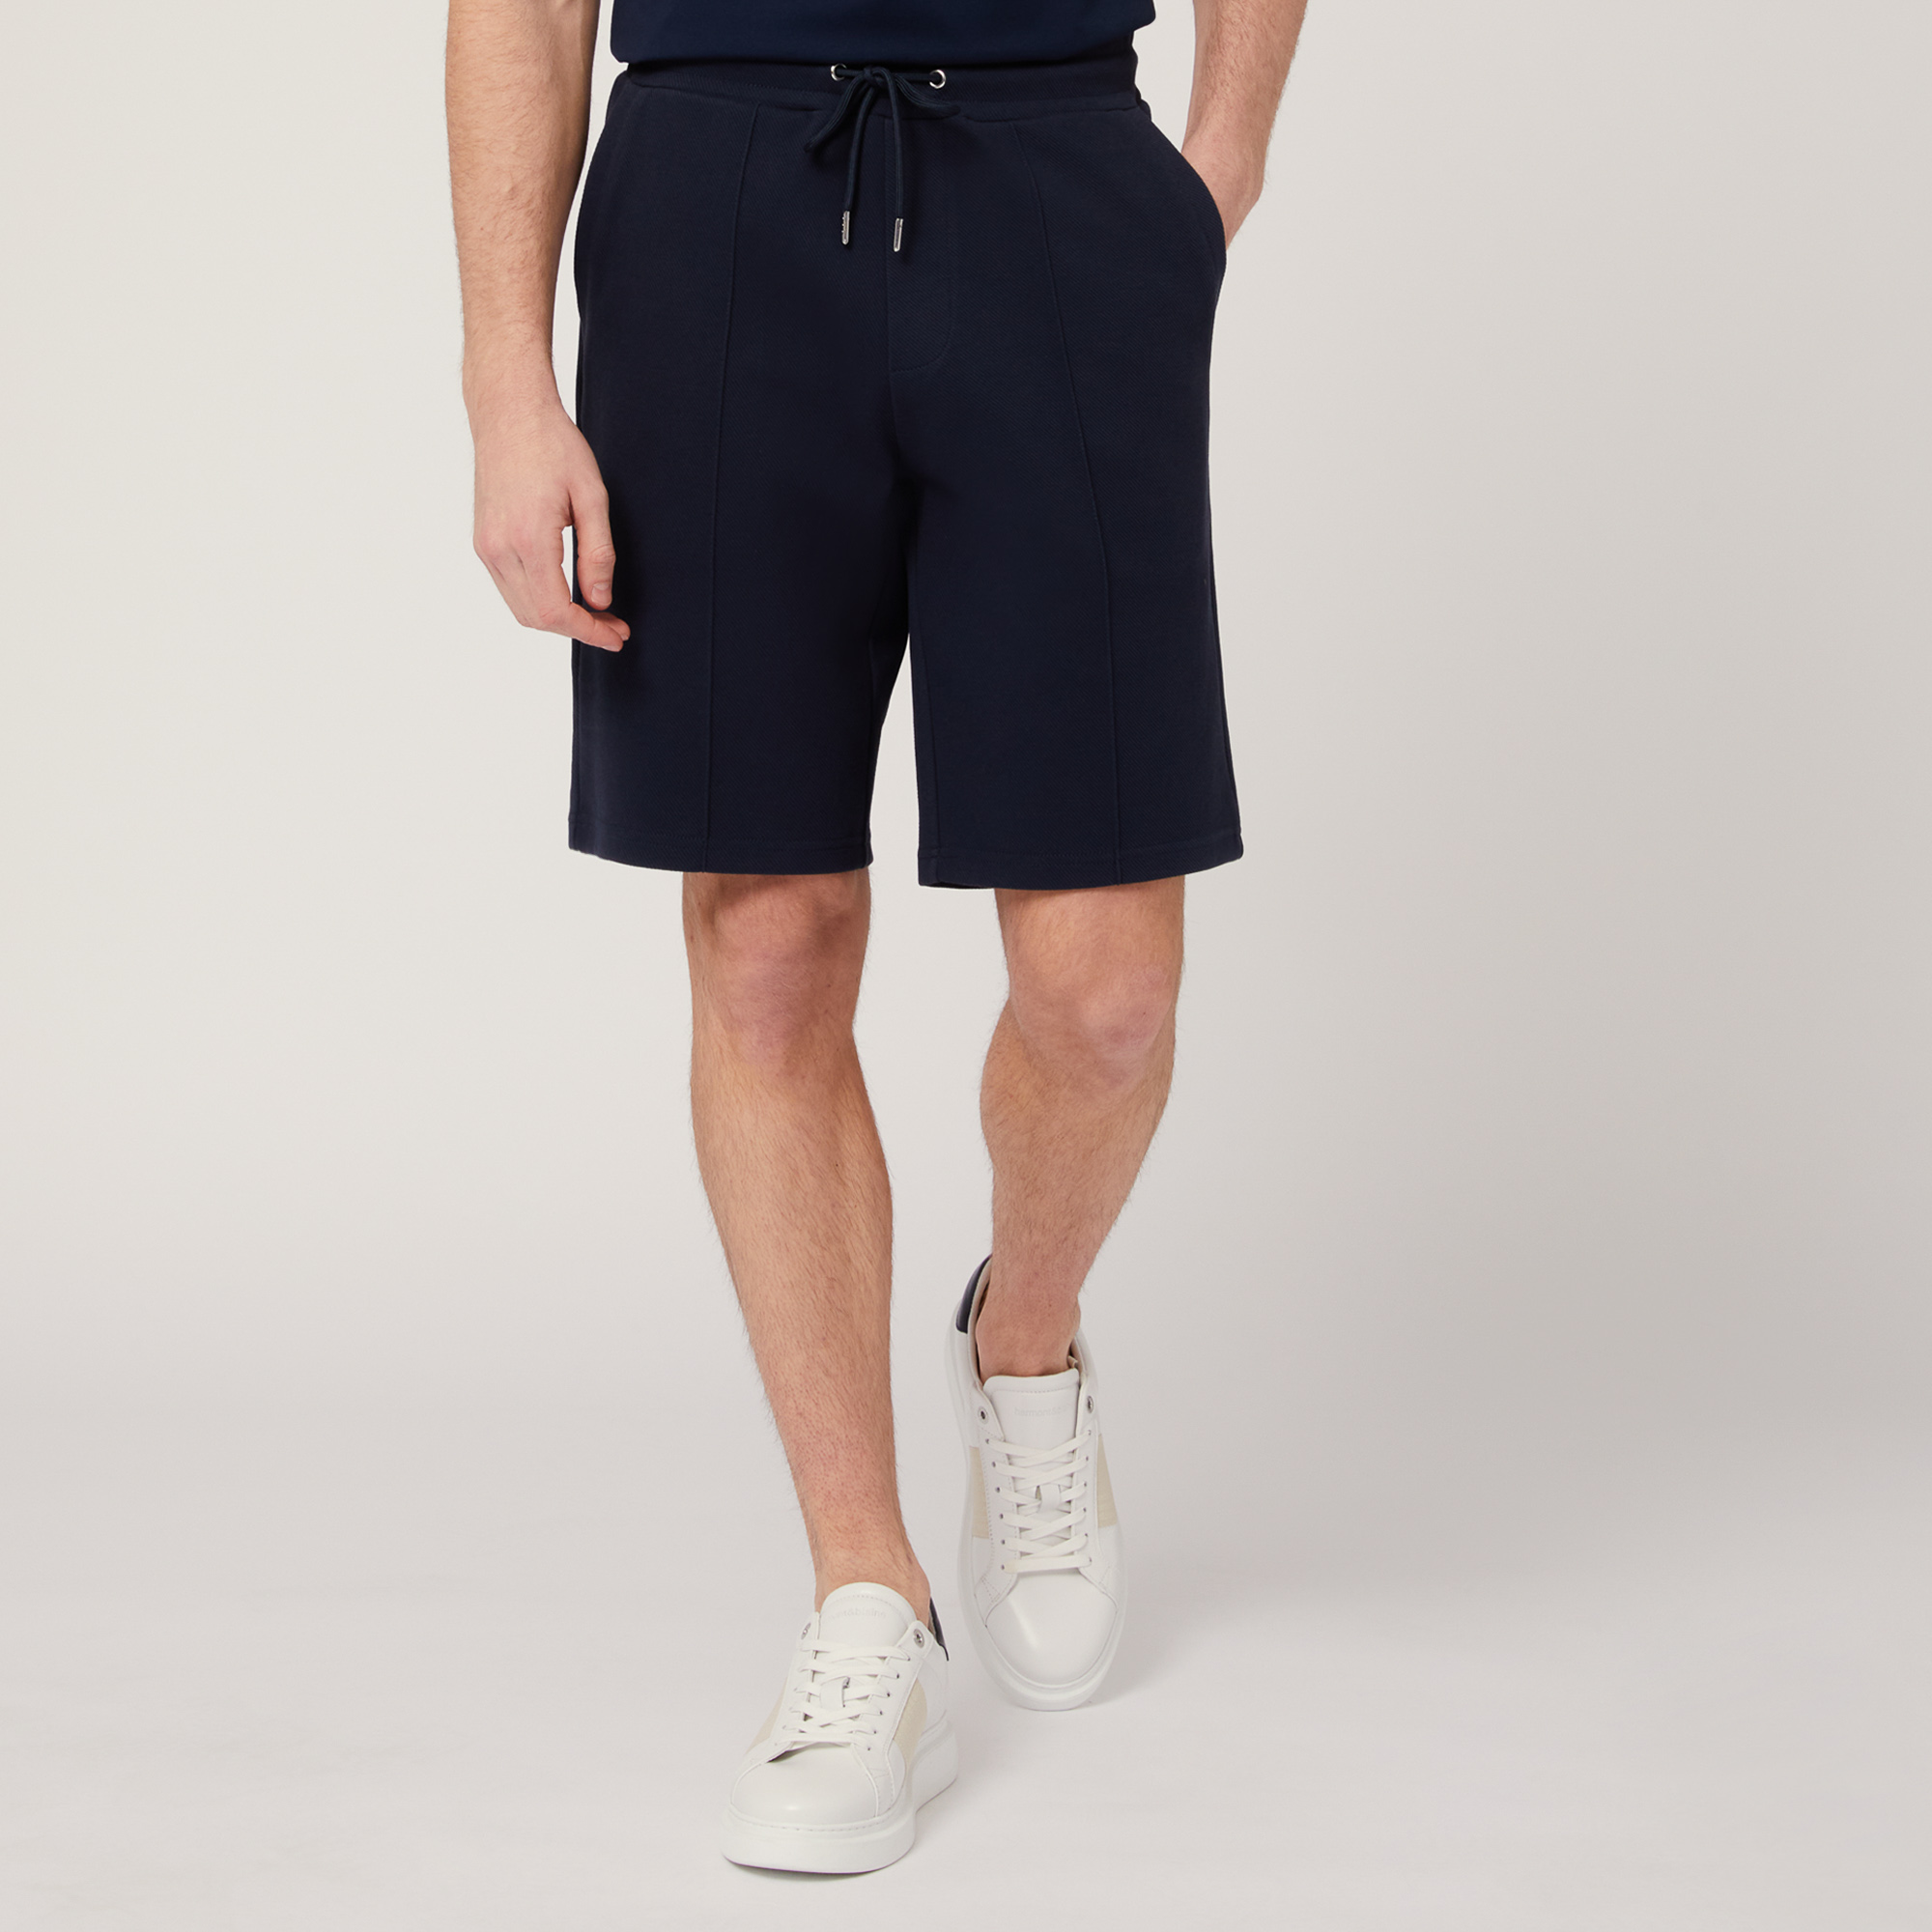 Shorts aus Stretch-Baumwolle mit Tasche hinten, Blau, large